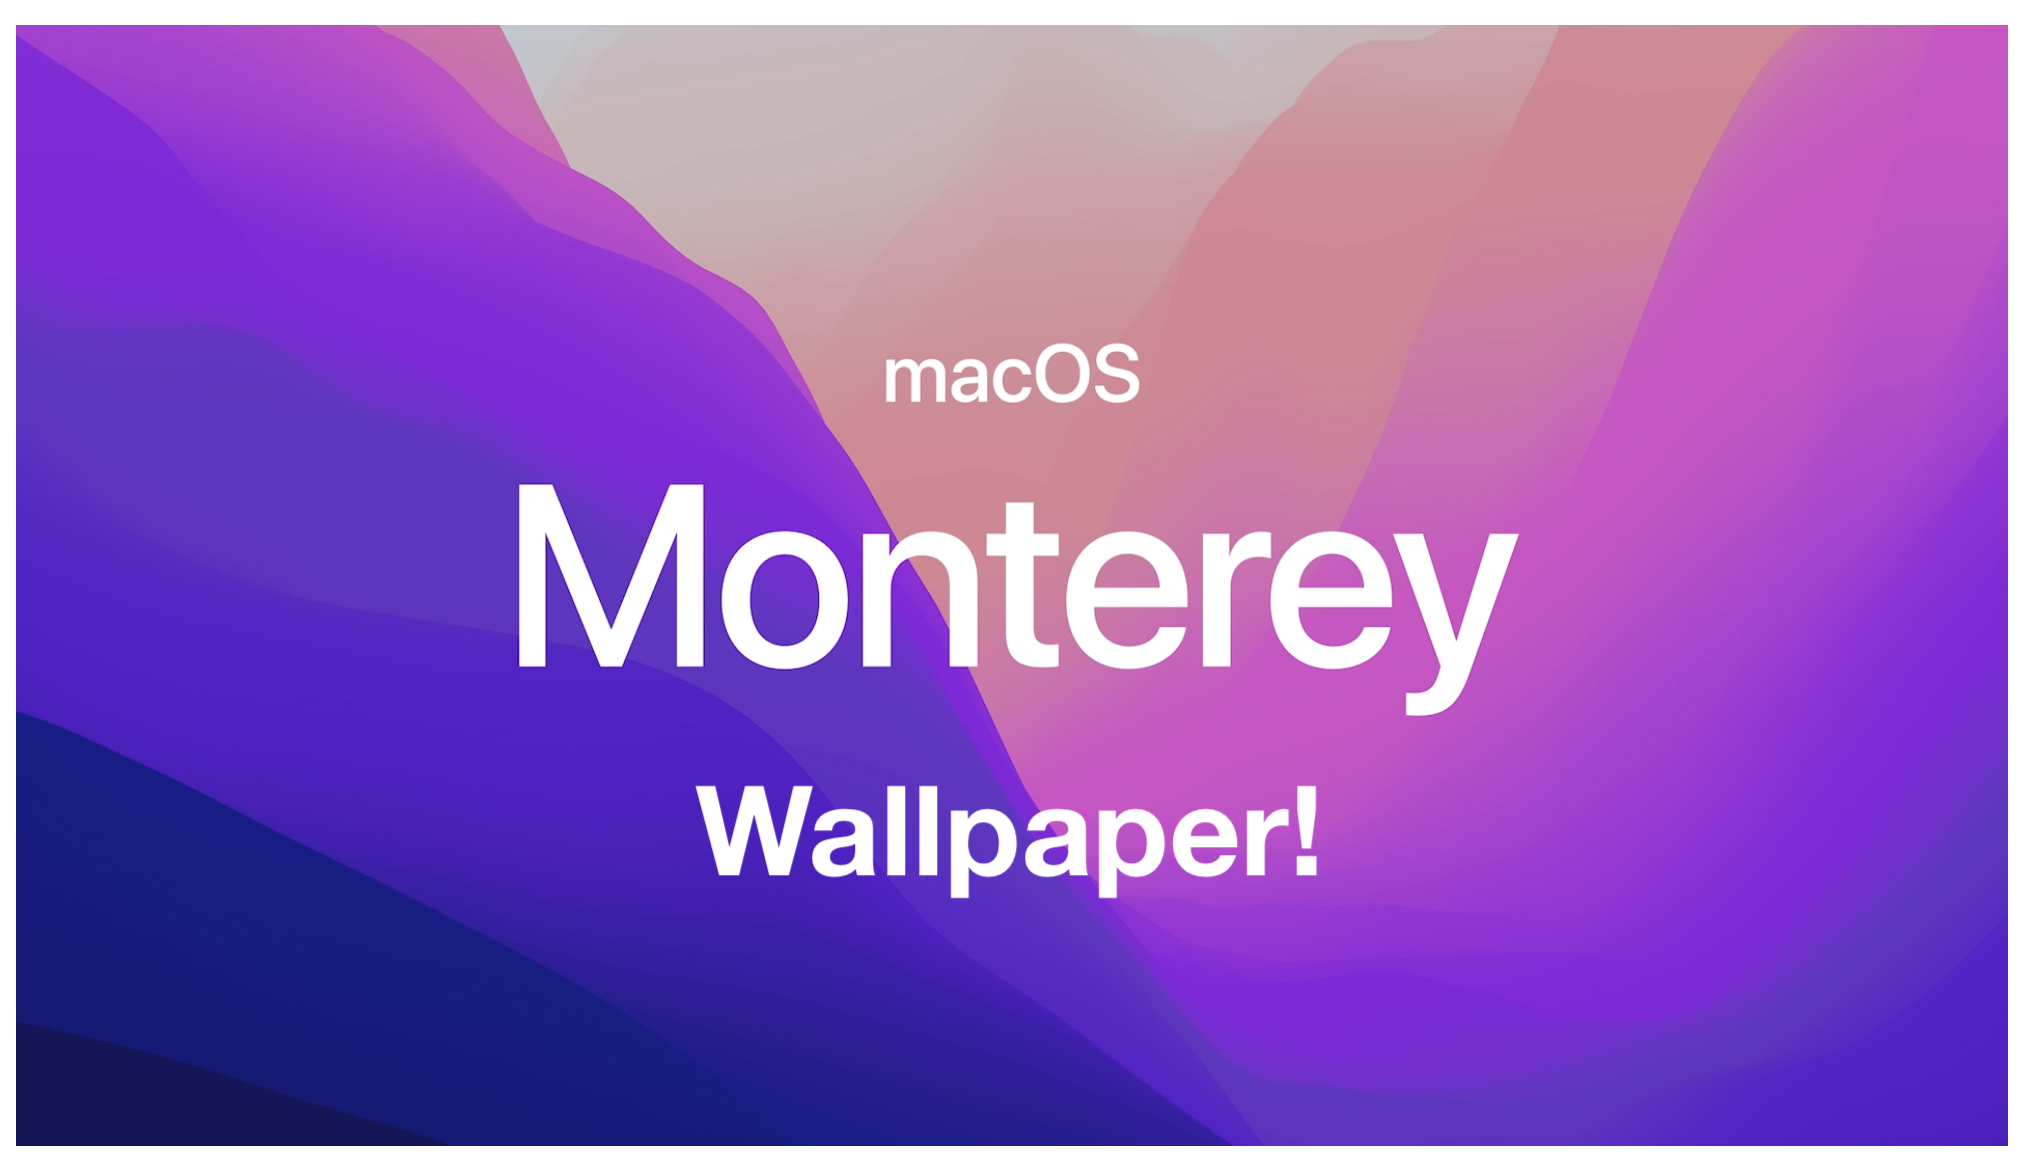 Download the New macOS Monterey Wallpapers & Desktop Pictures 5k!